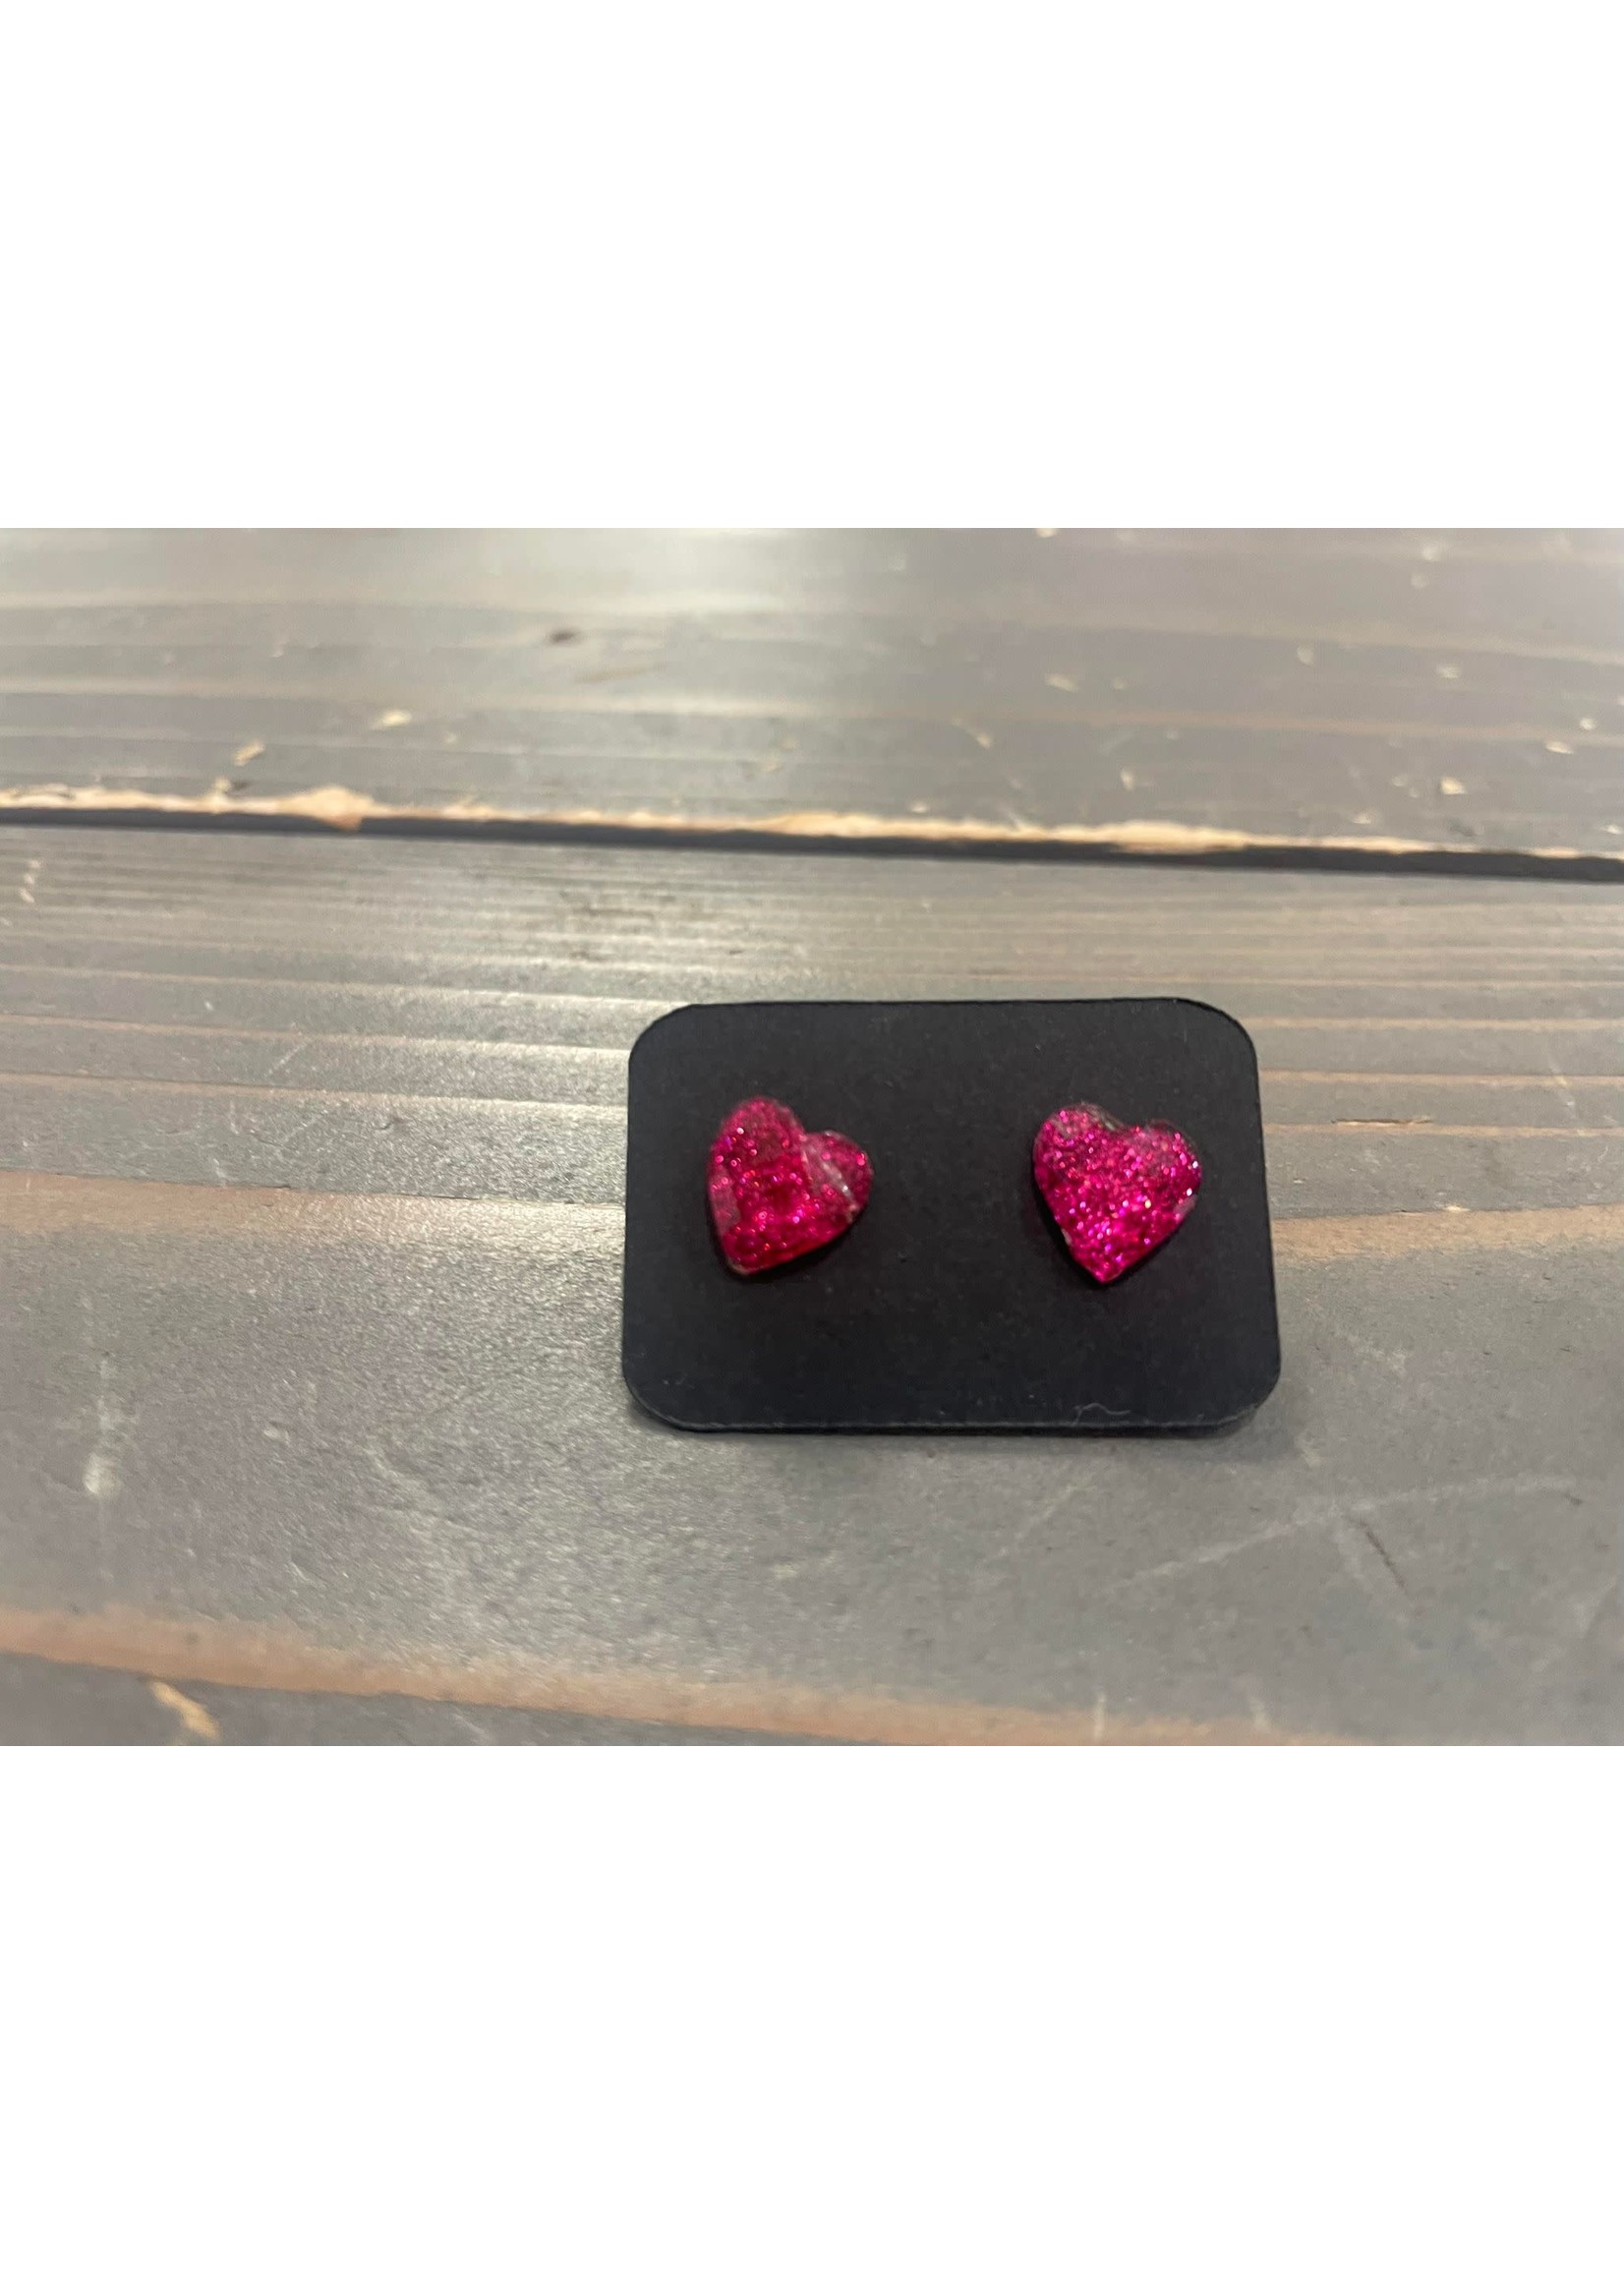 Glitter Heart stud earrings